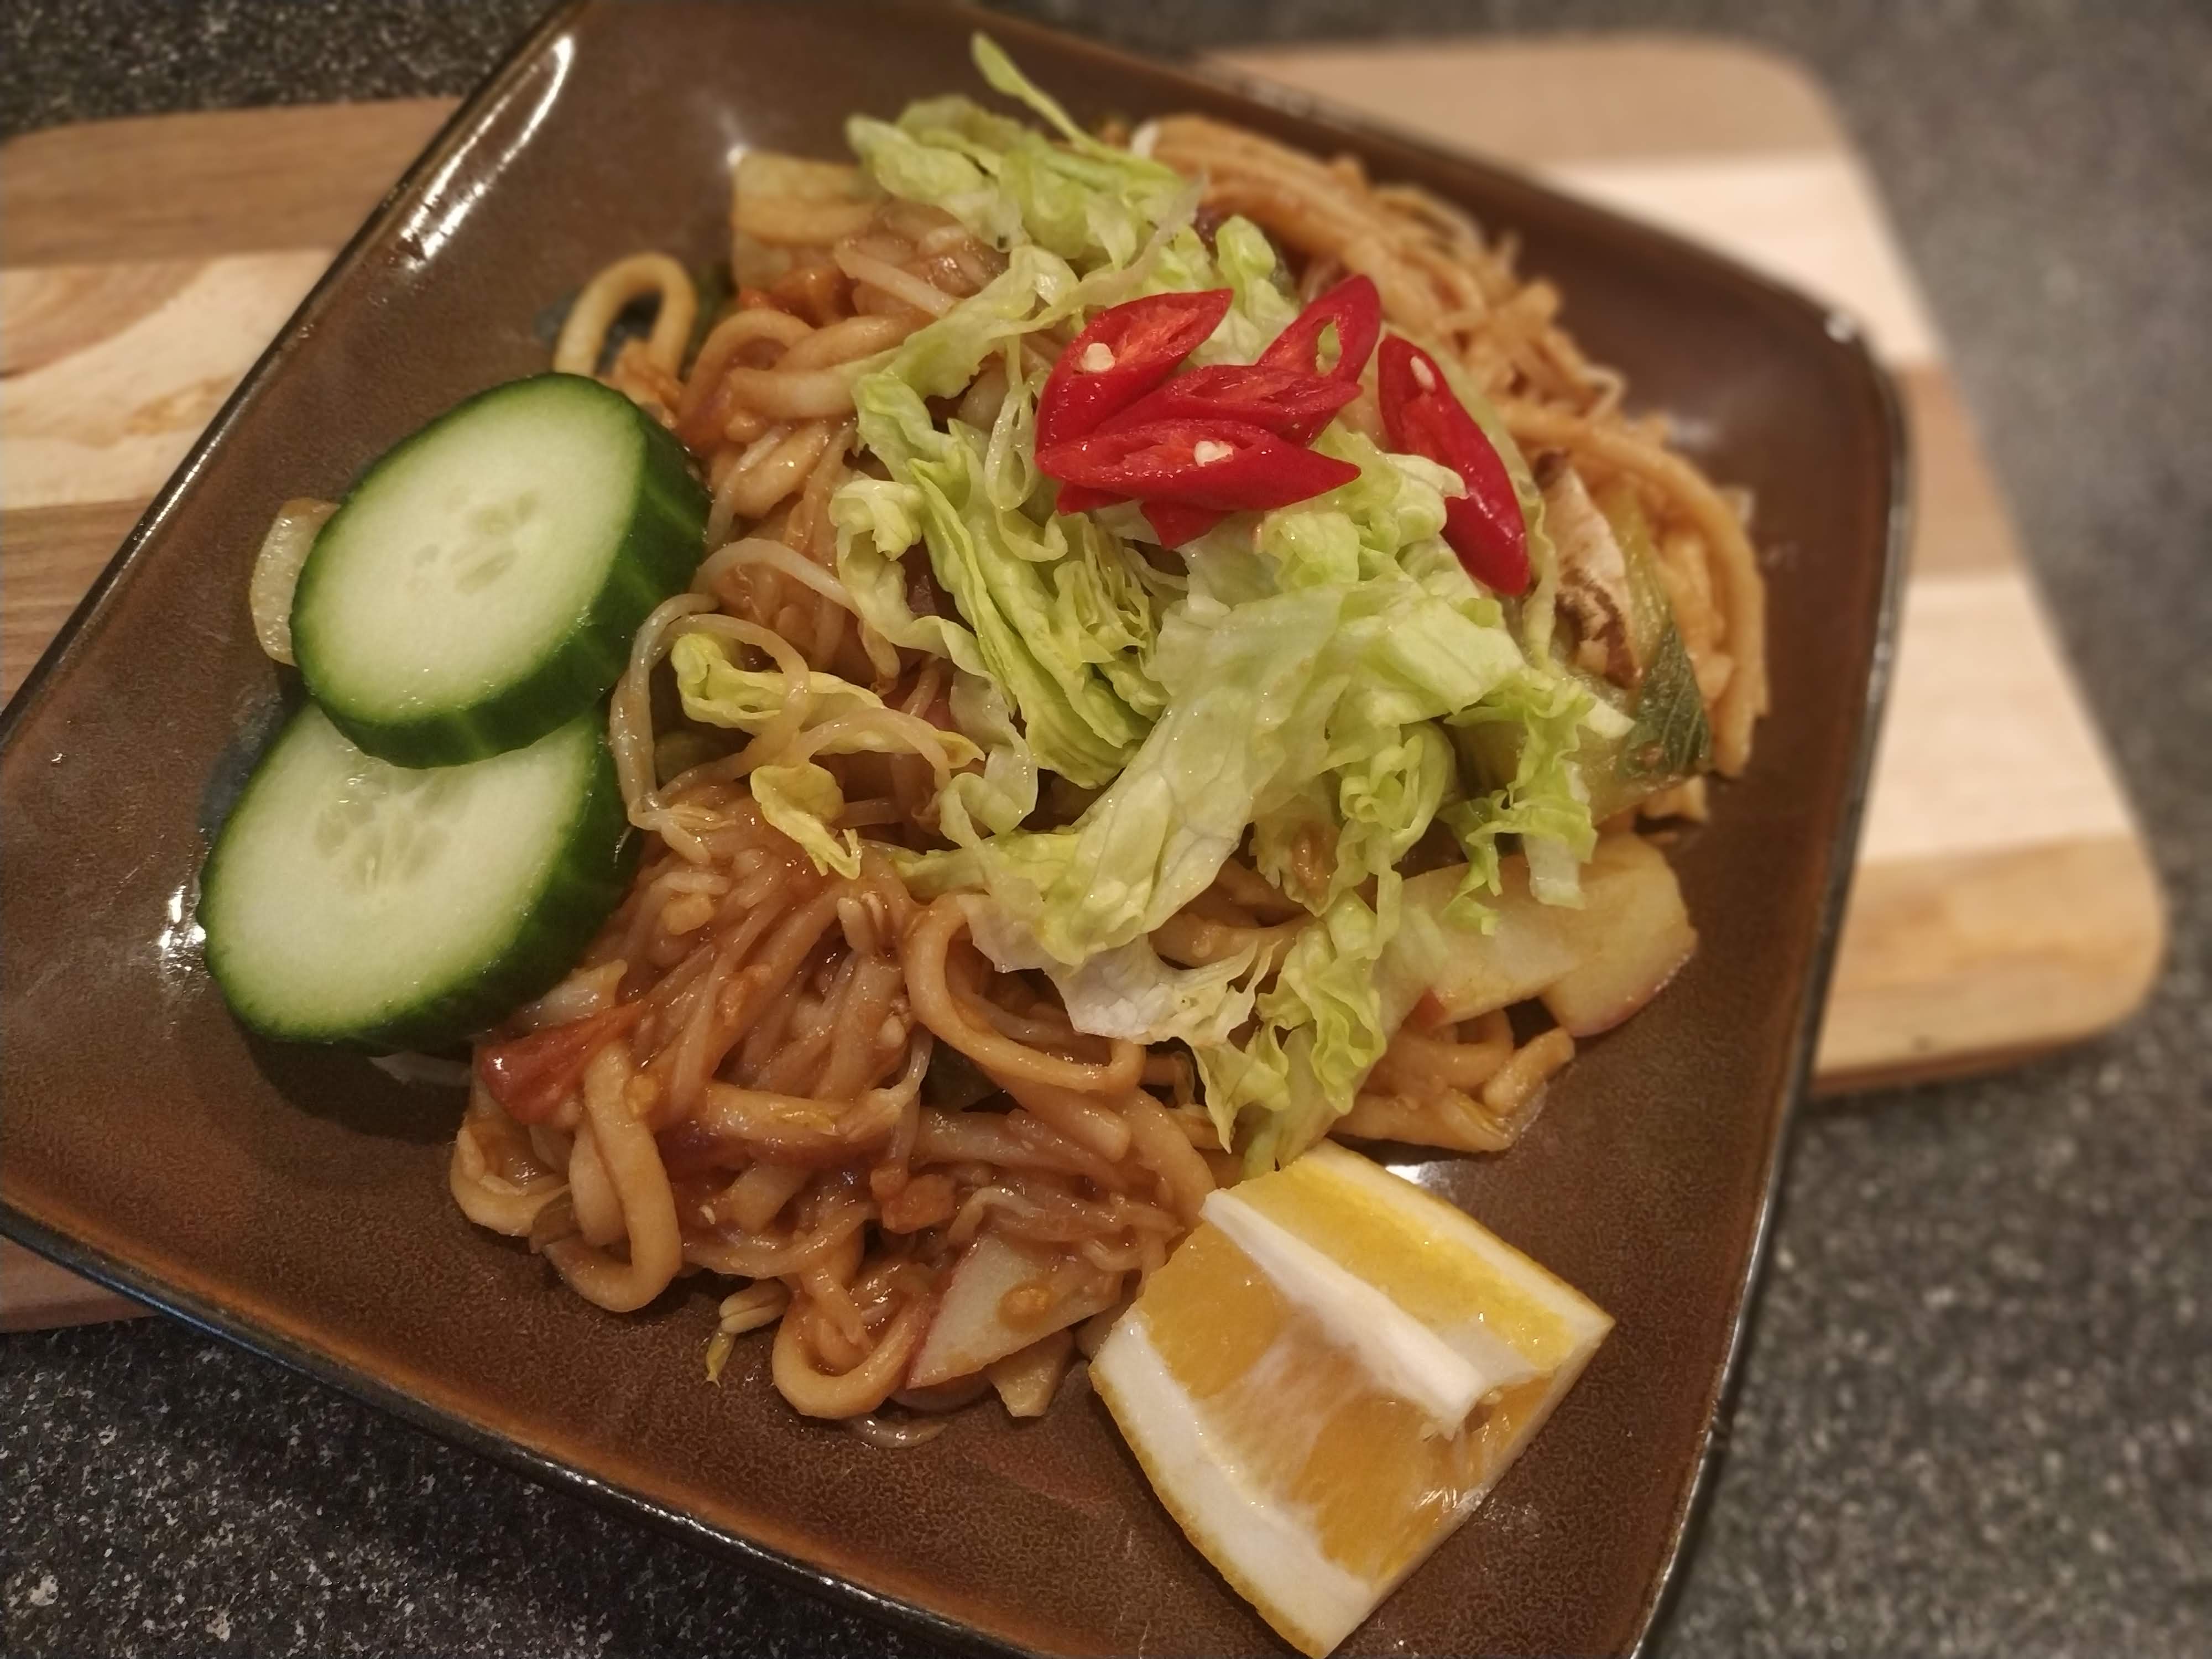 Mee Goreng (Stir Fried Noodles) on a plate